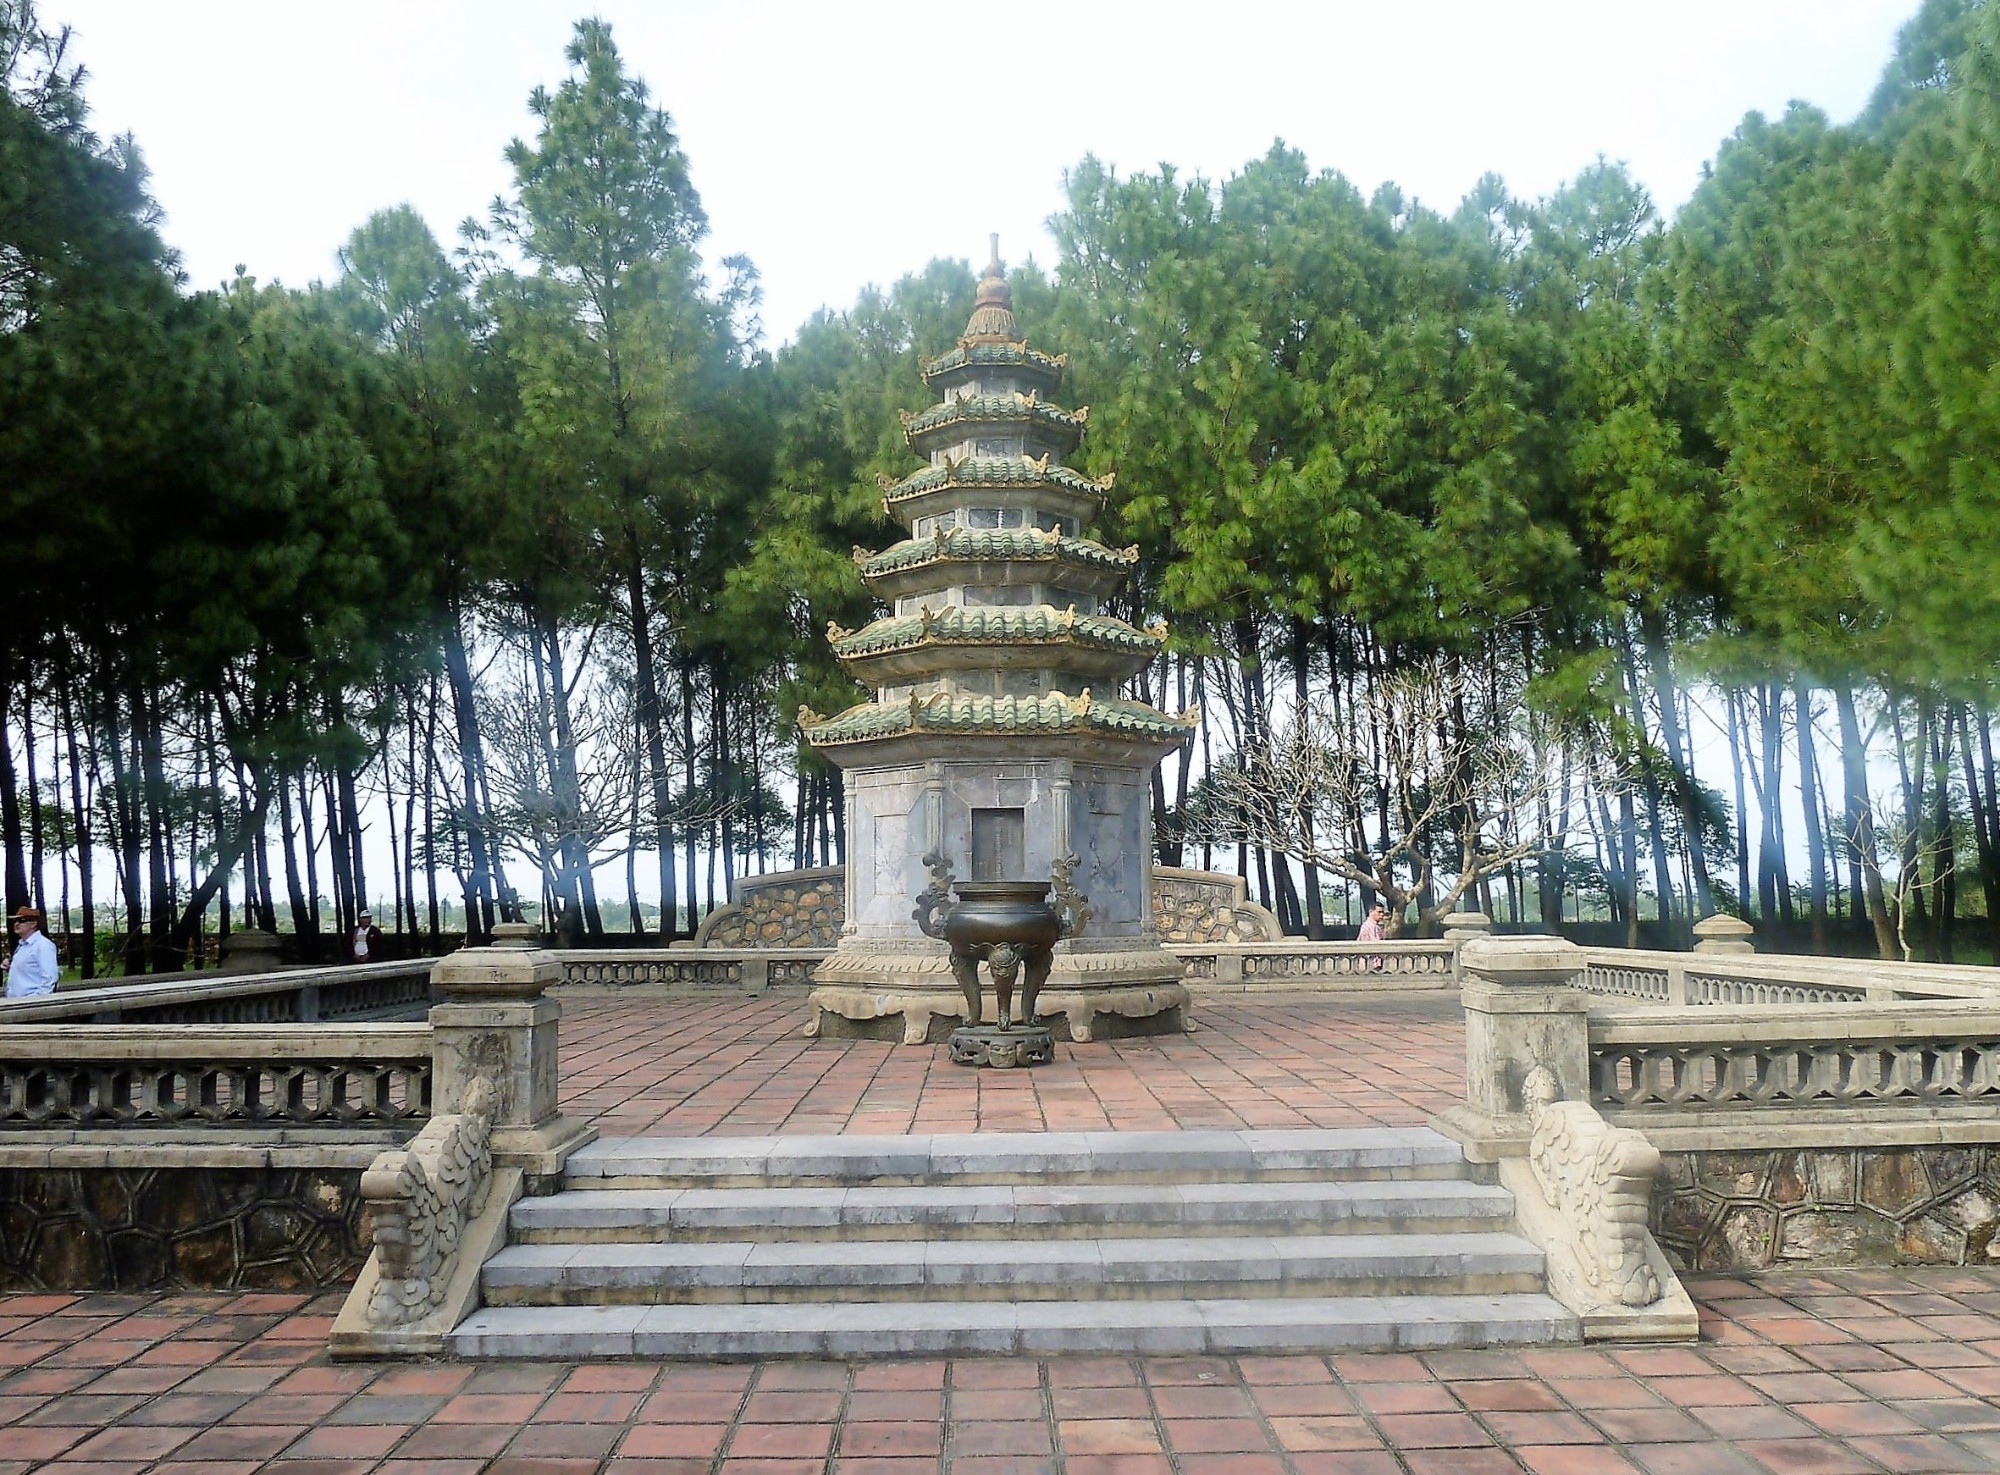 Small pagoda shrine